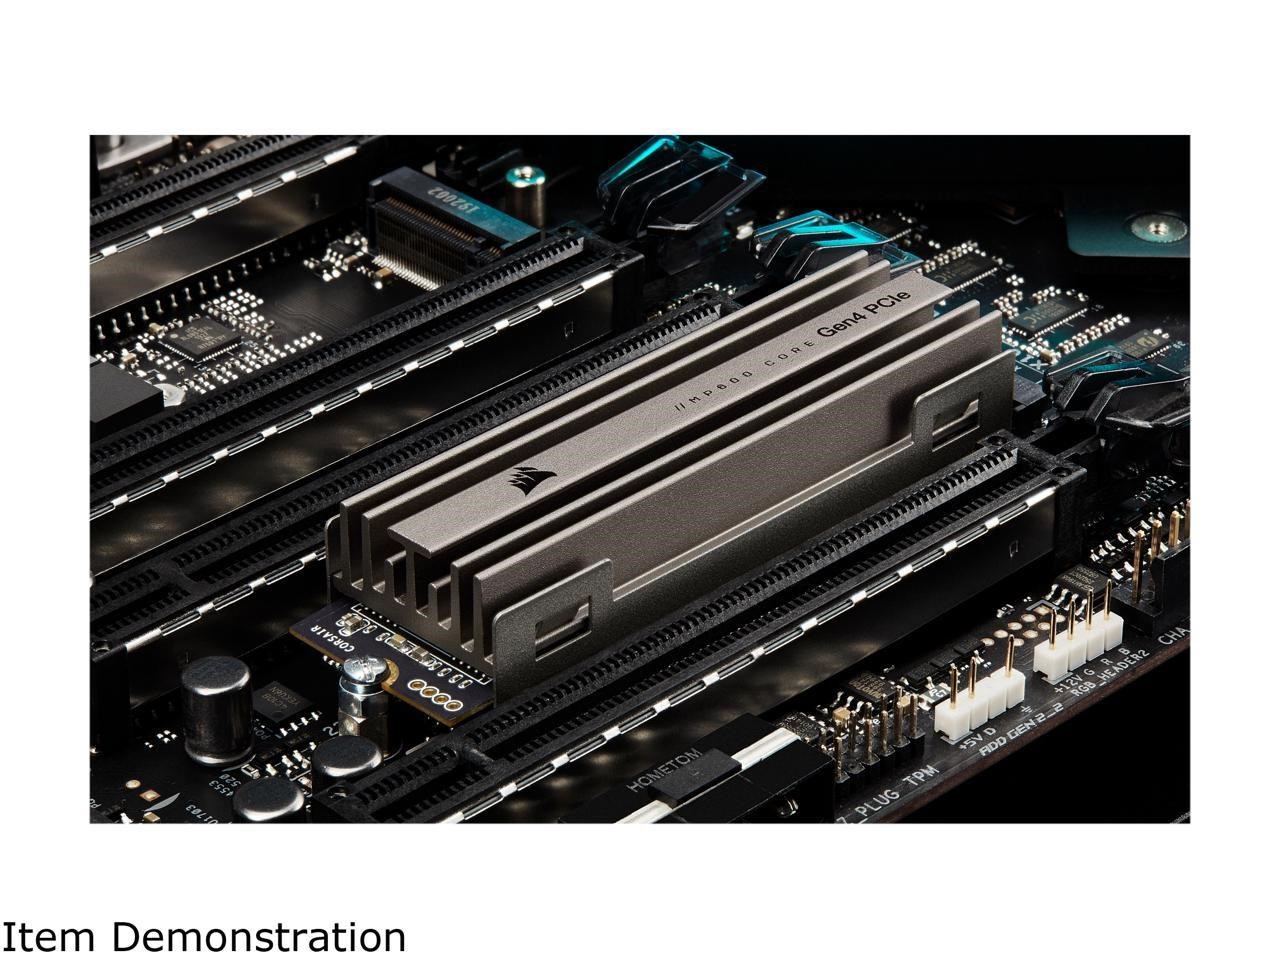 Corsair’in sıvı soğutmalı SSD’si MP600 Pro HydroX görüntülendi, fiyatları listelendi